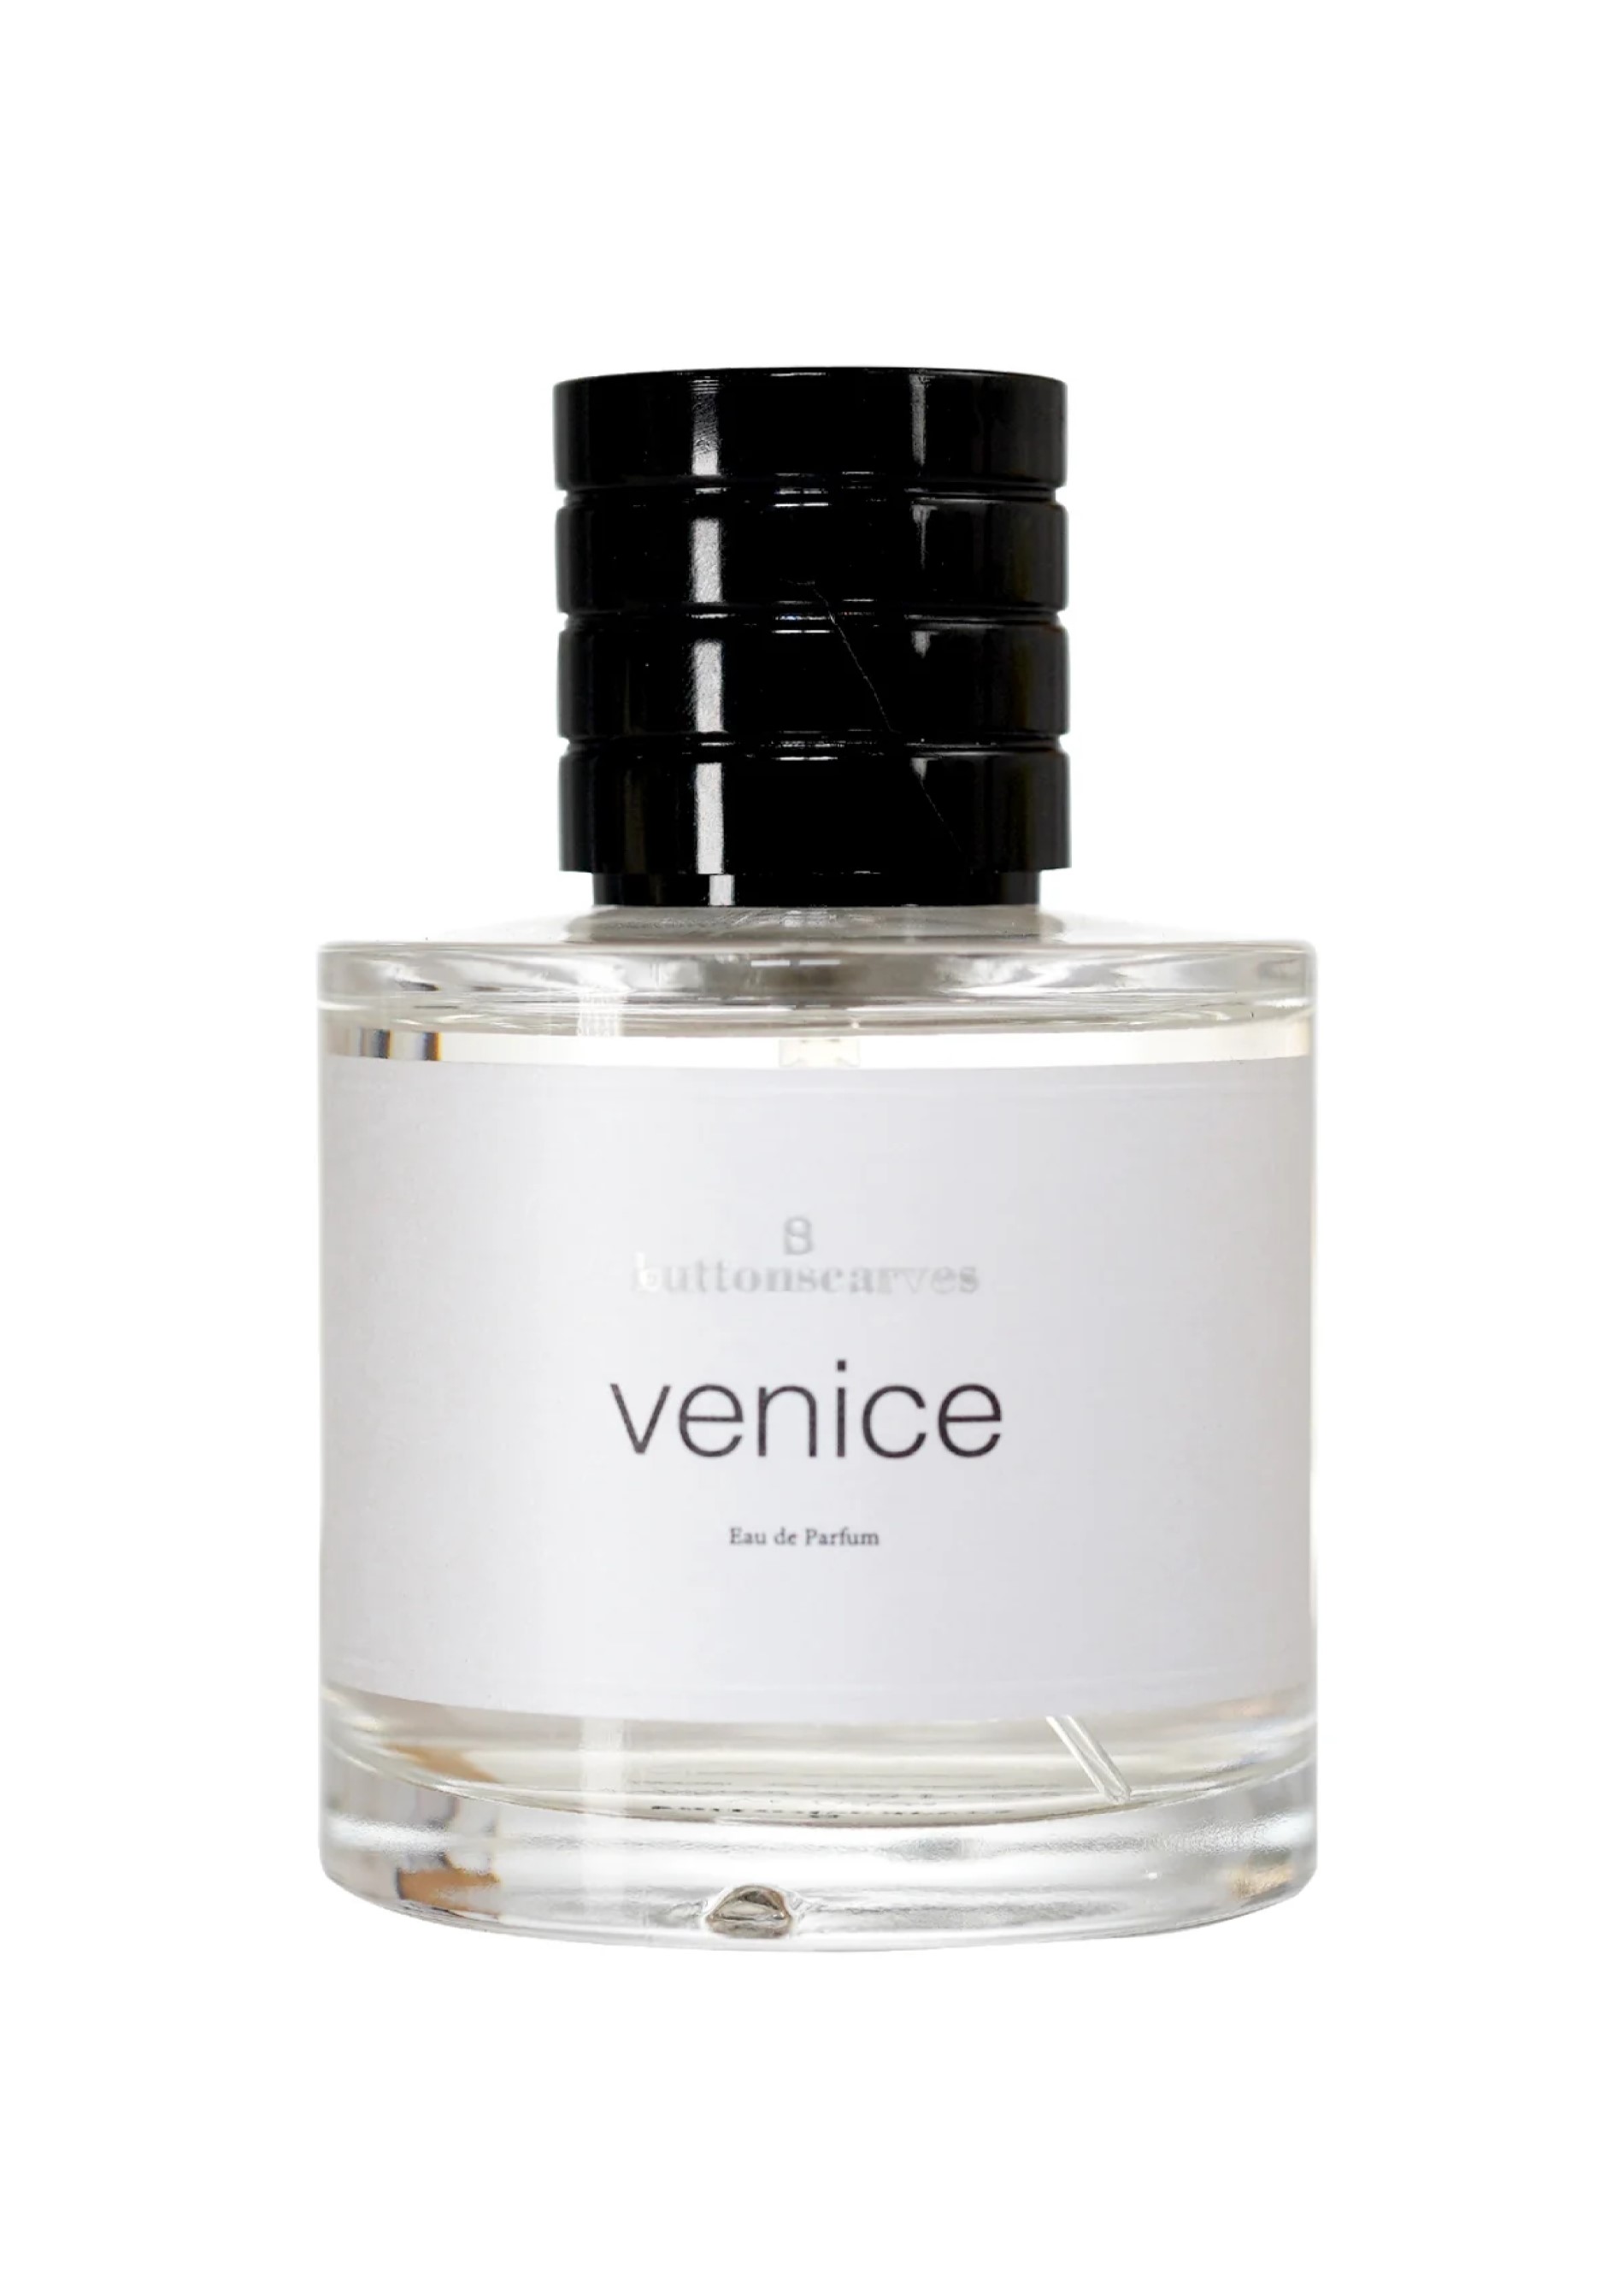 Buttonscarves Venice Eau de Parfum (Sumber Foto: Buttonscarves)